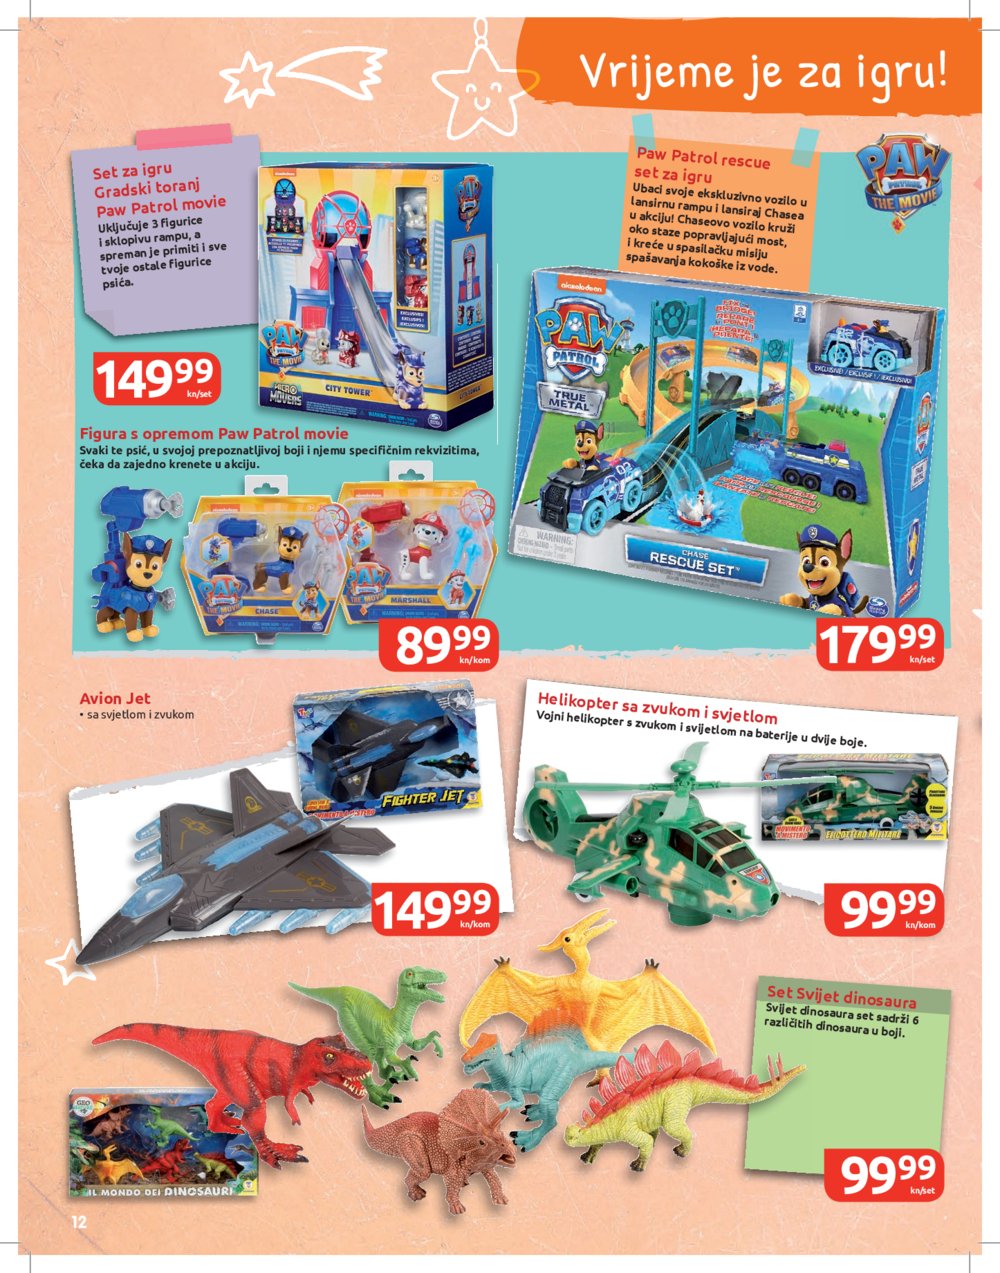 INTERSPAR Katalog Svijet igračaka 27.10.-05.01.2022.